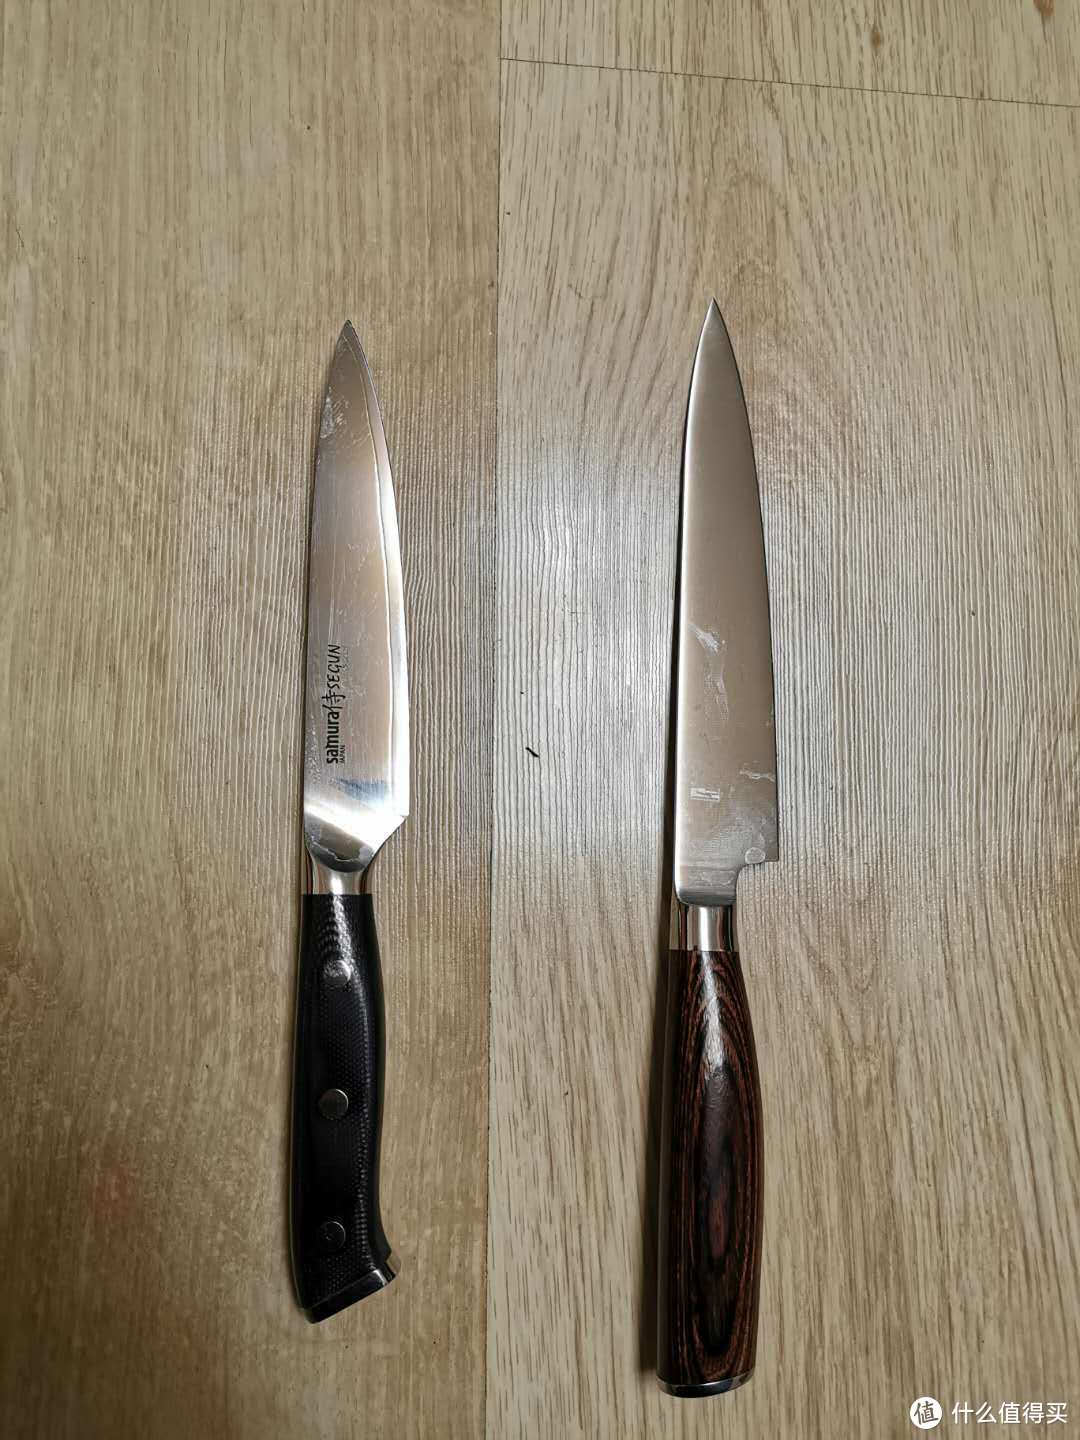 左边的小刀刀刃短些，且刀刃为镜面抛光，感觉更适合做水果刀用